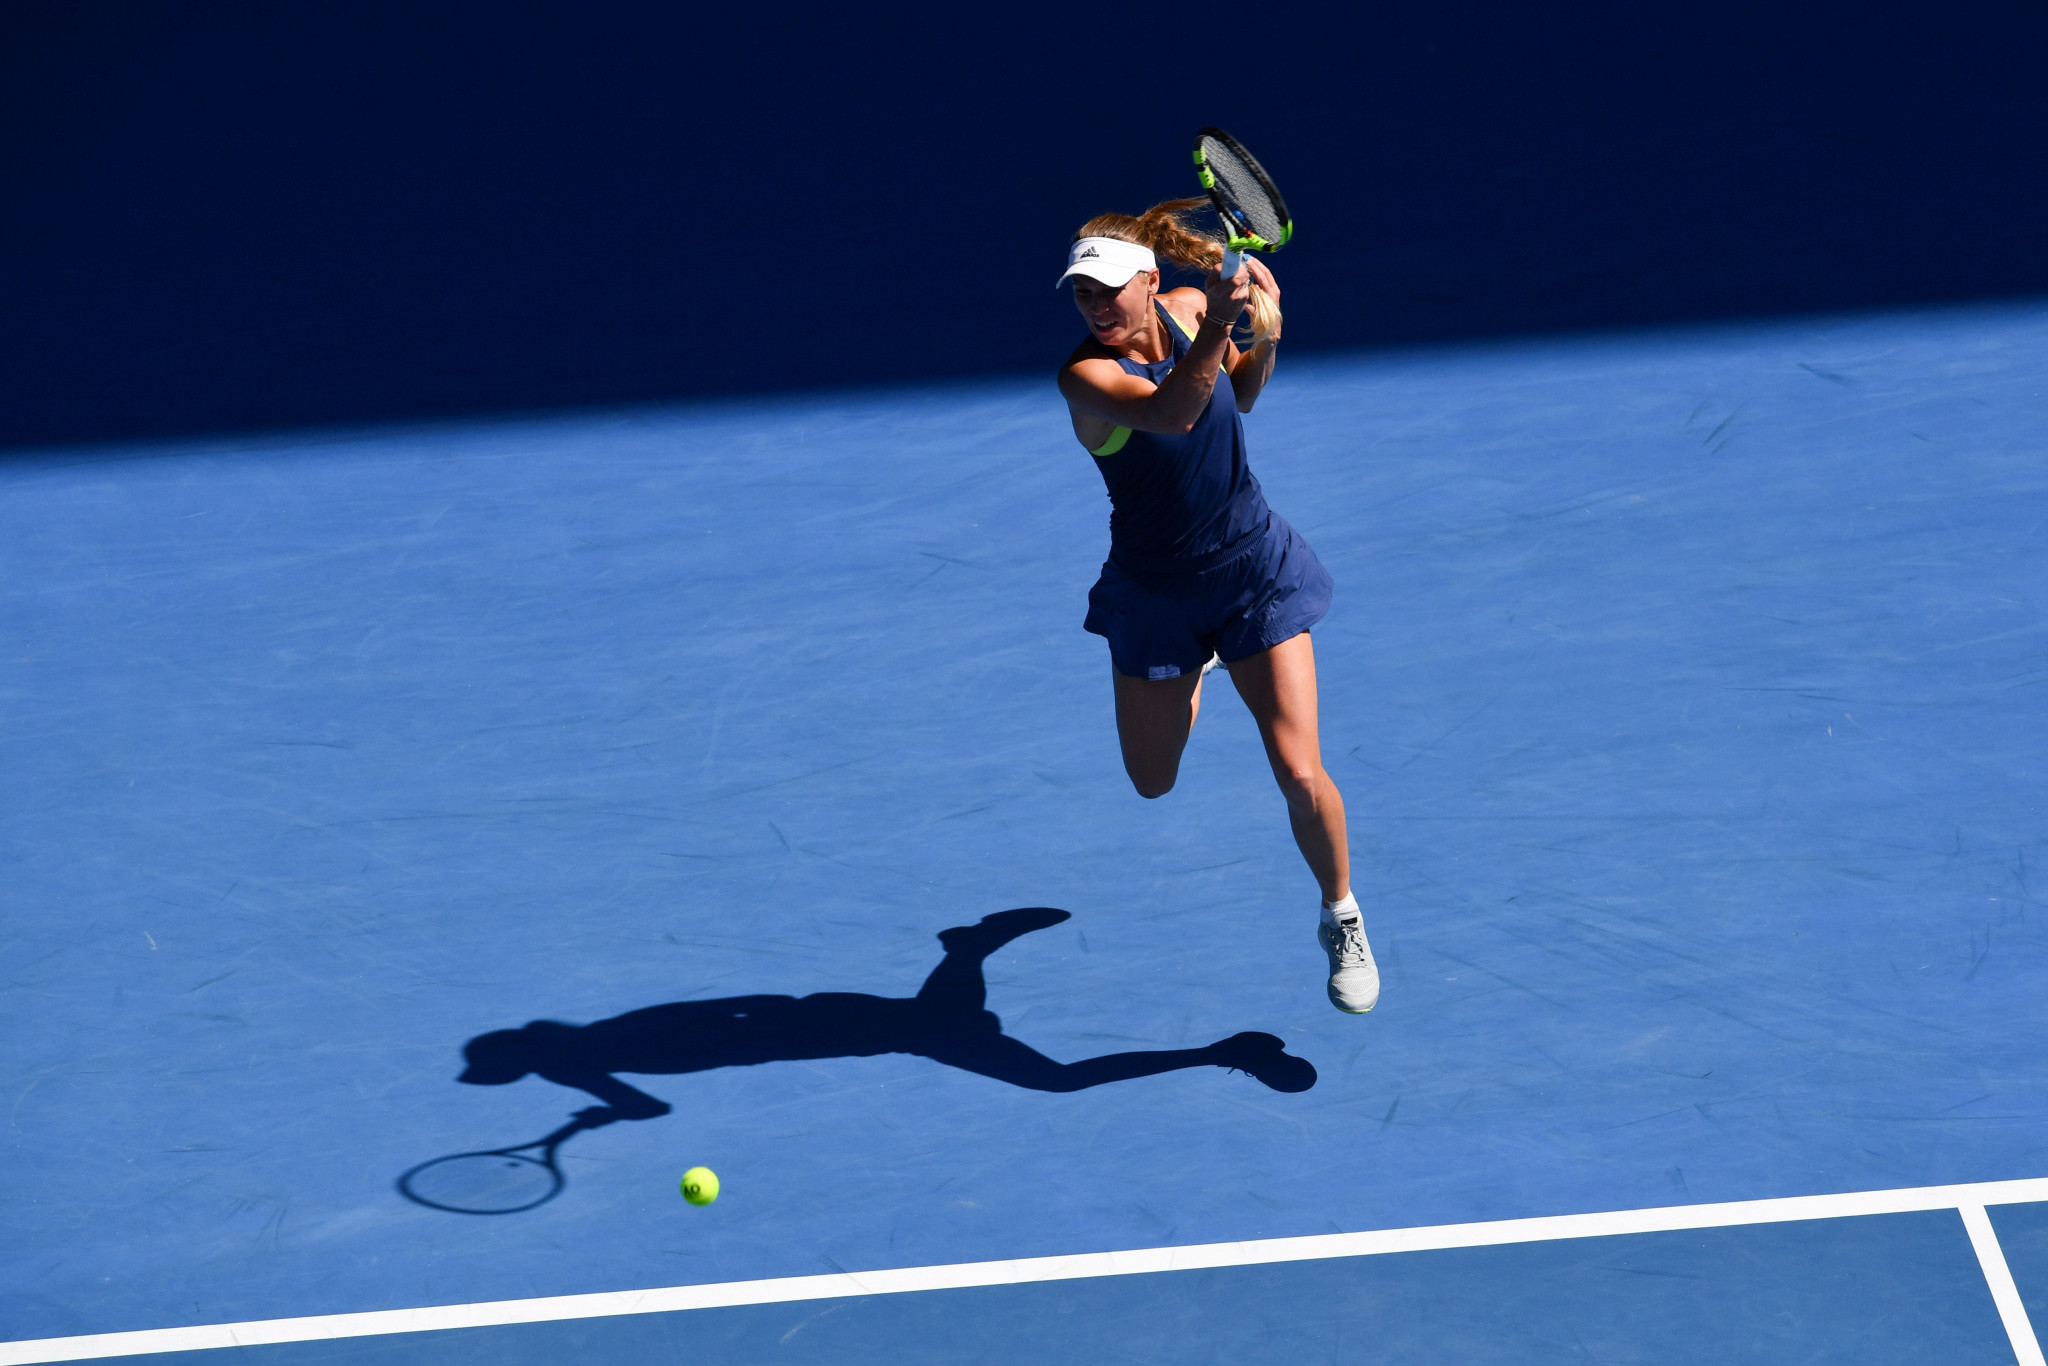 Caroline Wozniacki will take on Simona Halep in the women's singles final ©Getty Images